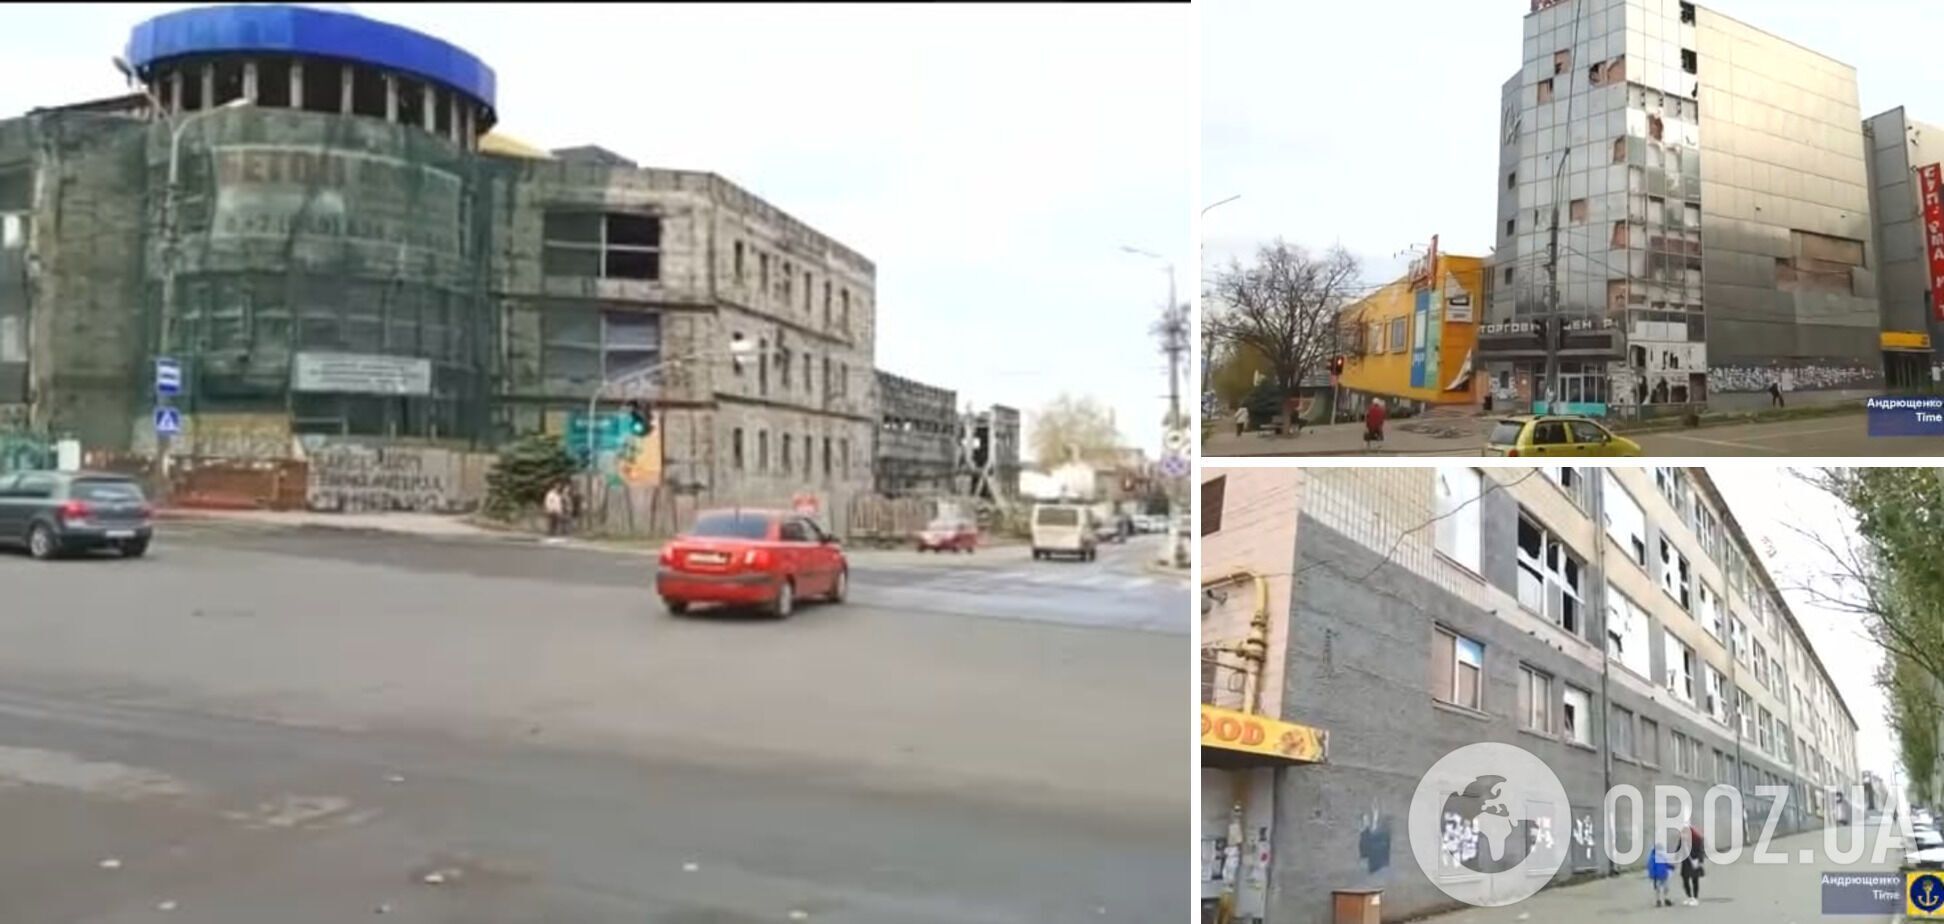 Пустыри, грязь и руины: в сети показали, как выглядит центр оккупированного Мариуполя. Видео